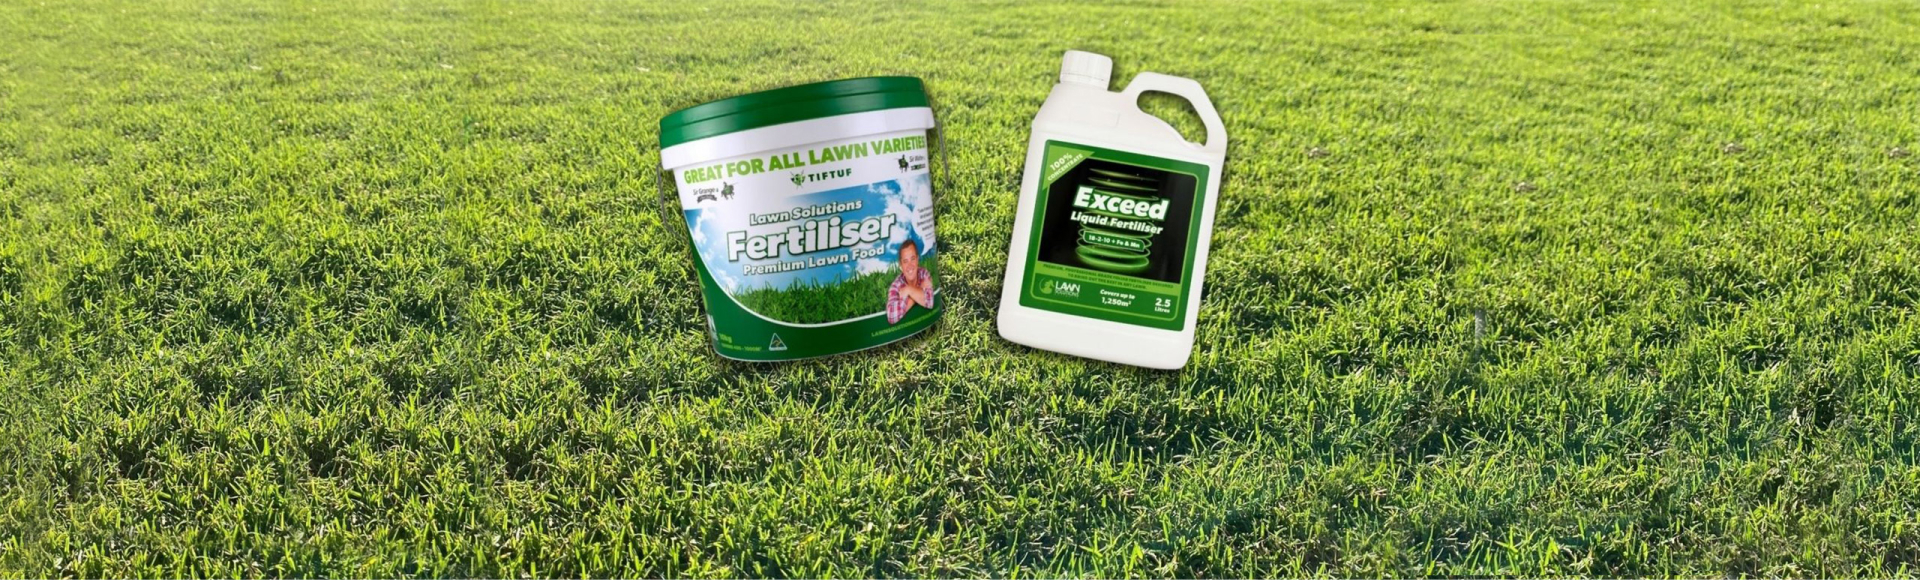 When Should I Put Fertilizer On My Lawn